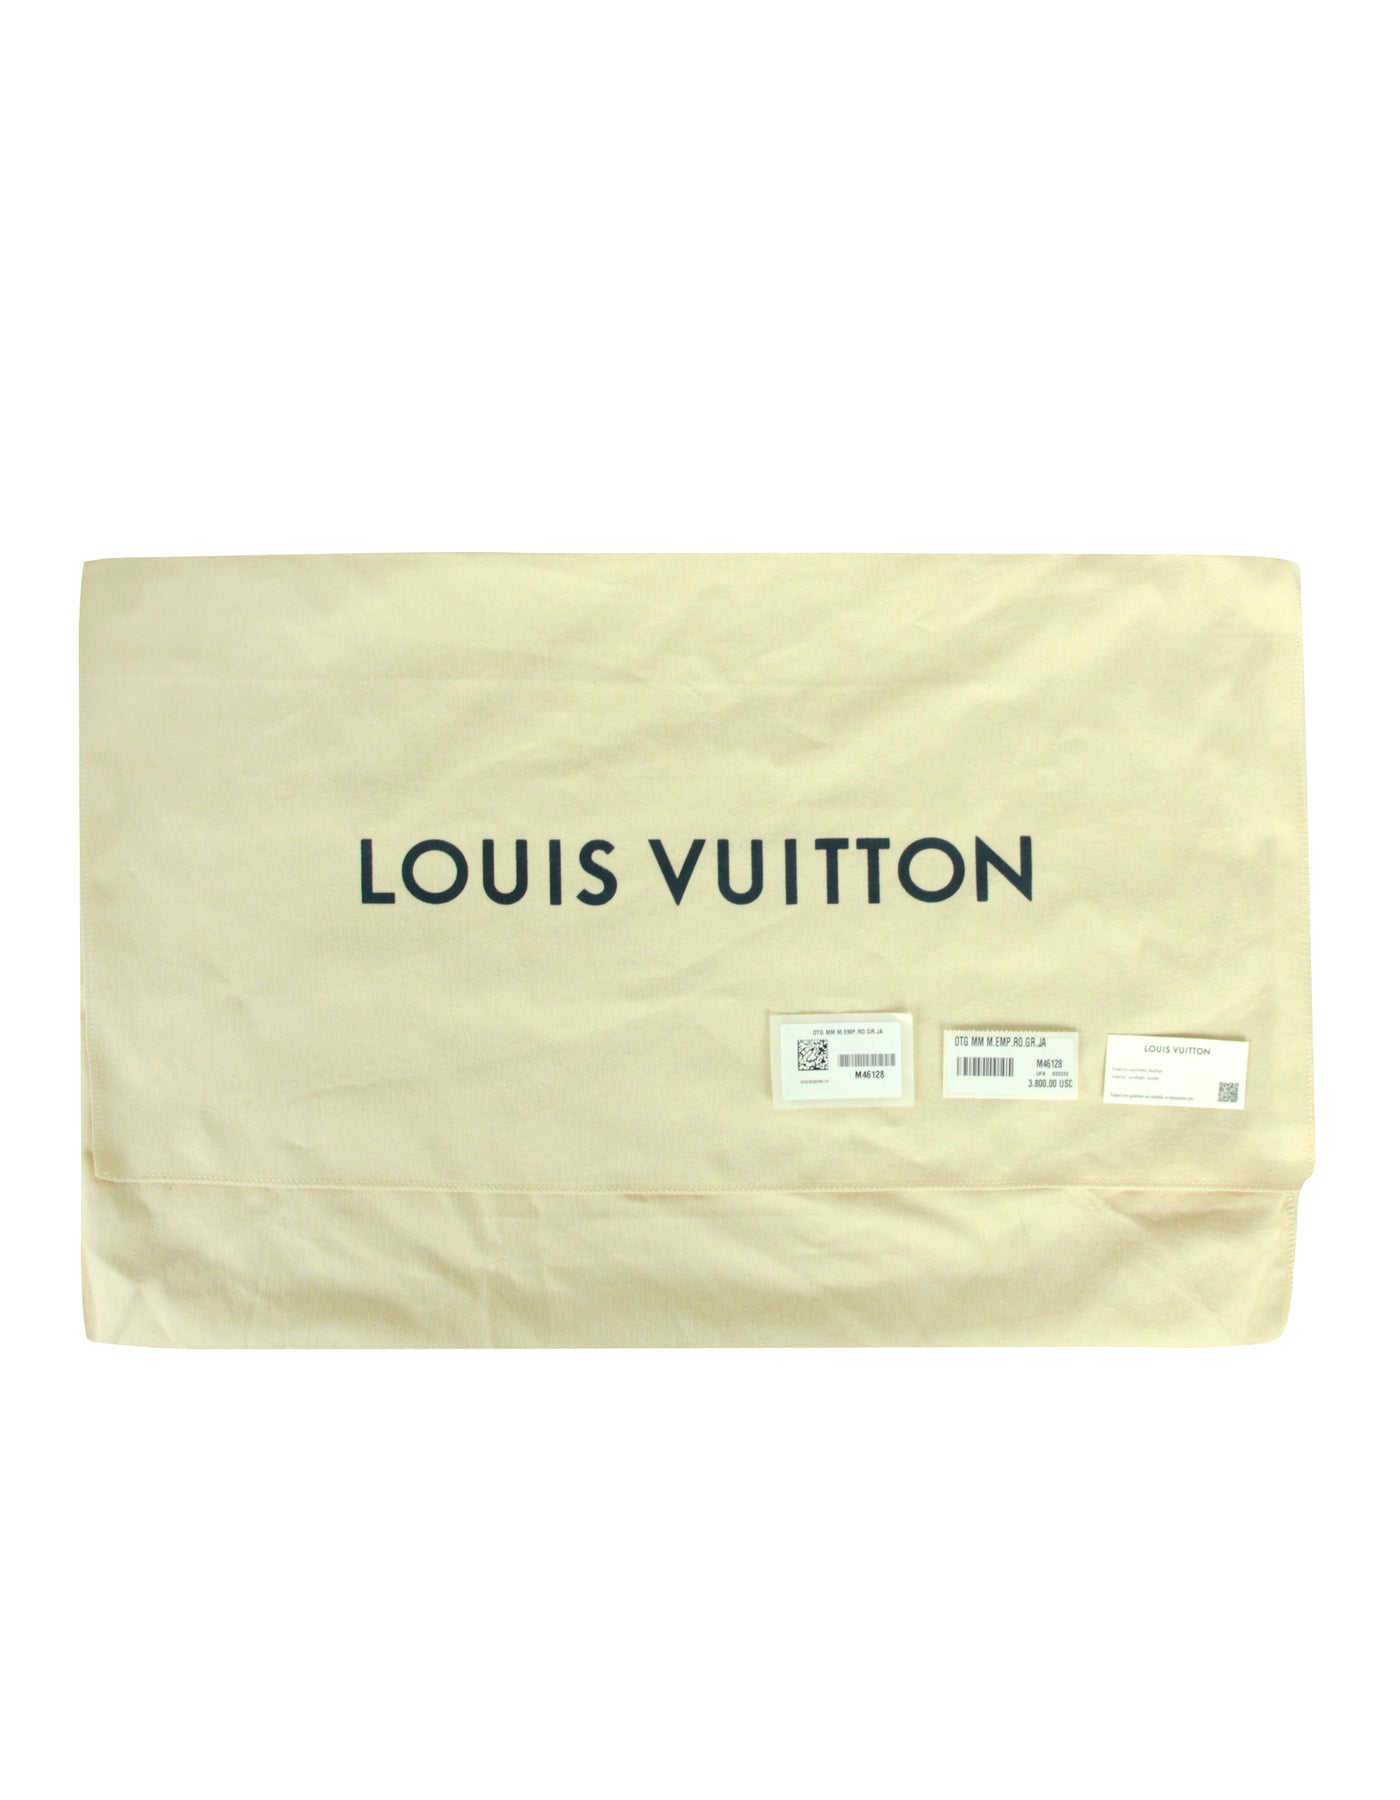 Louis Vuitton Empreinte Monogram Spring in The City Onthego mm Beige Pink Yellow